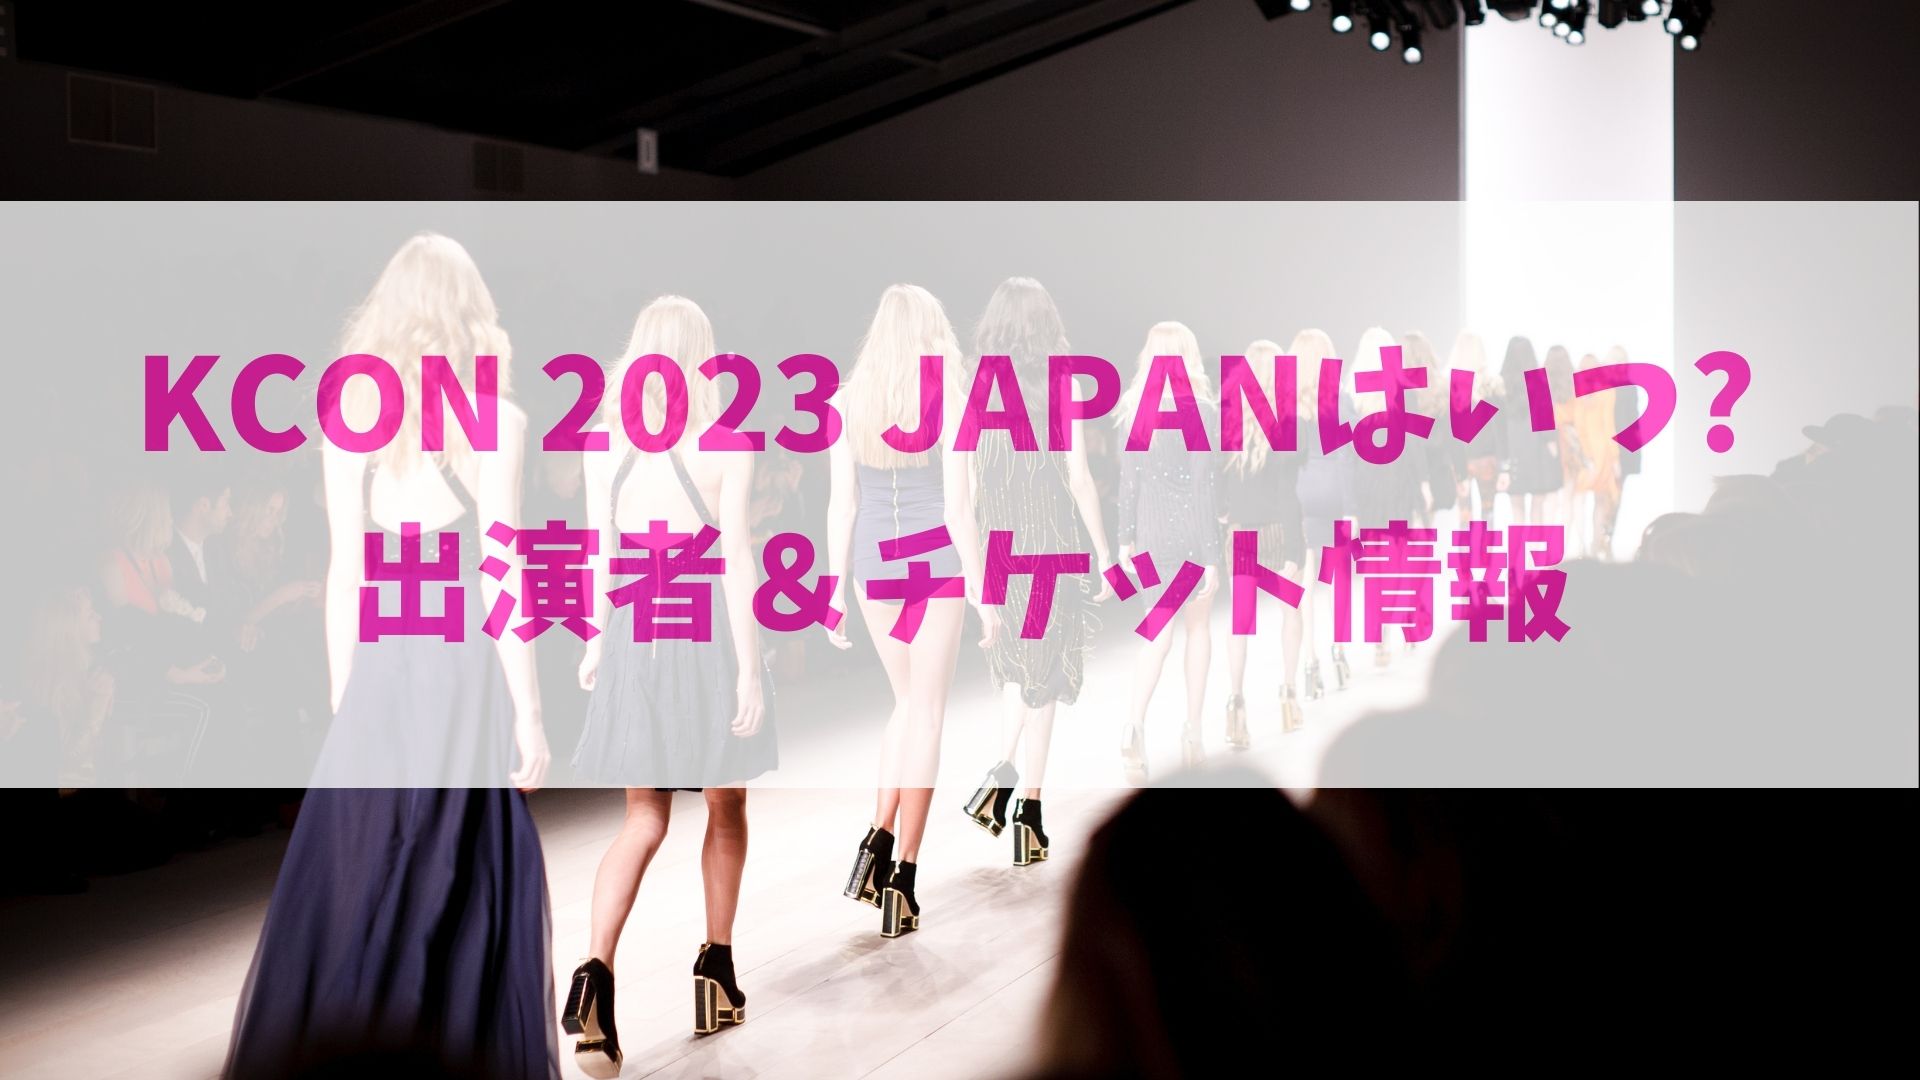 KCON 2023 JAPANはいつ?